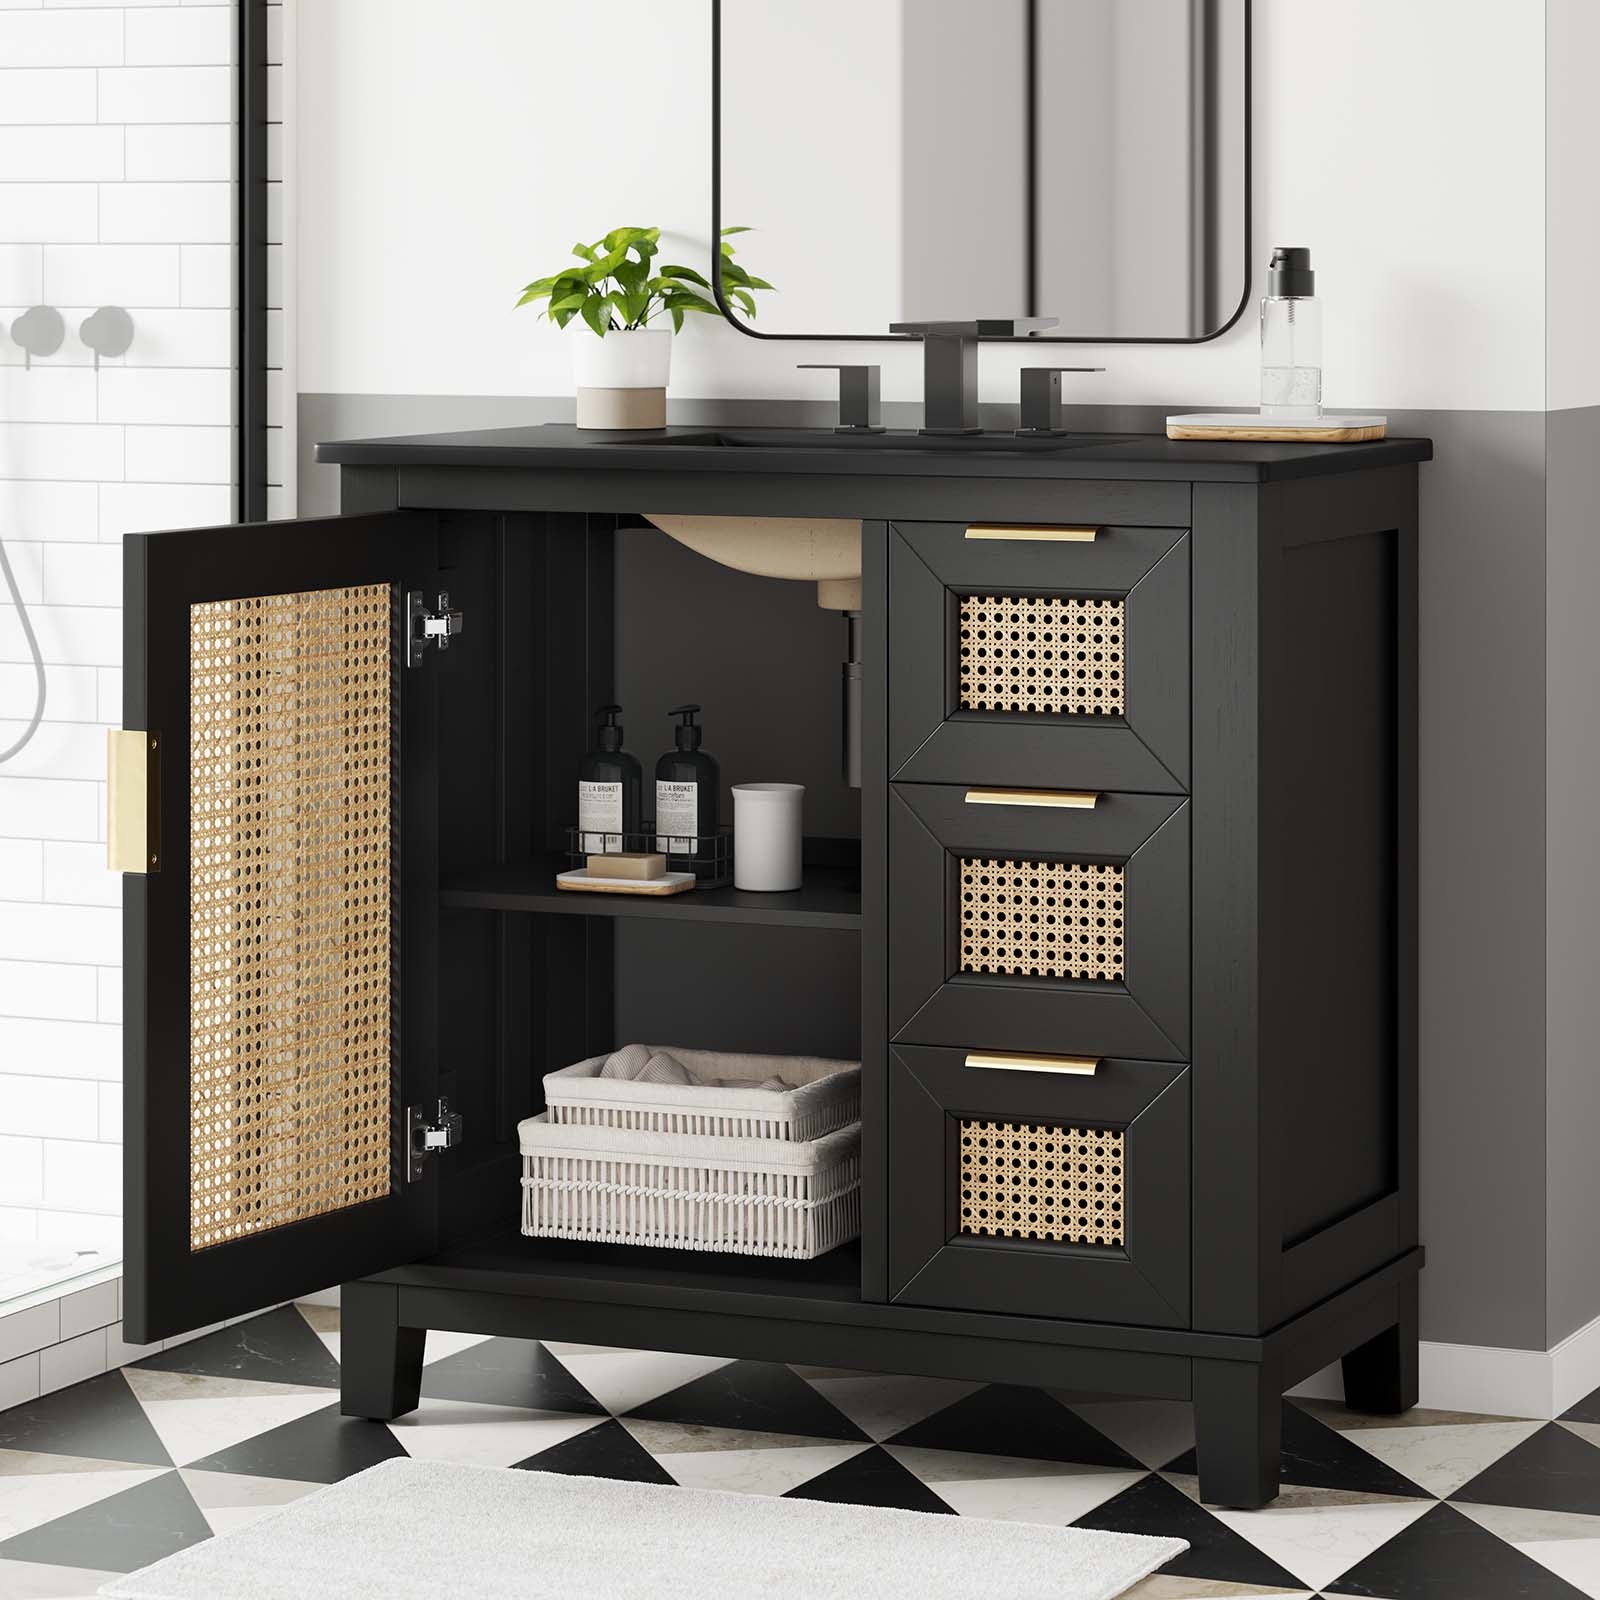 Dixie 36” Solid Wood Bathroom Vanity Cabinet-Bathroom Vanity-Modway-Wall2Wall Furnishings